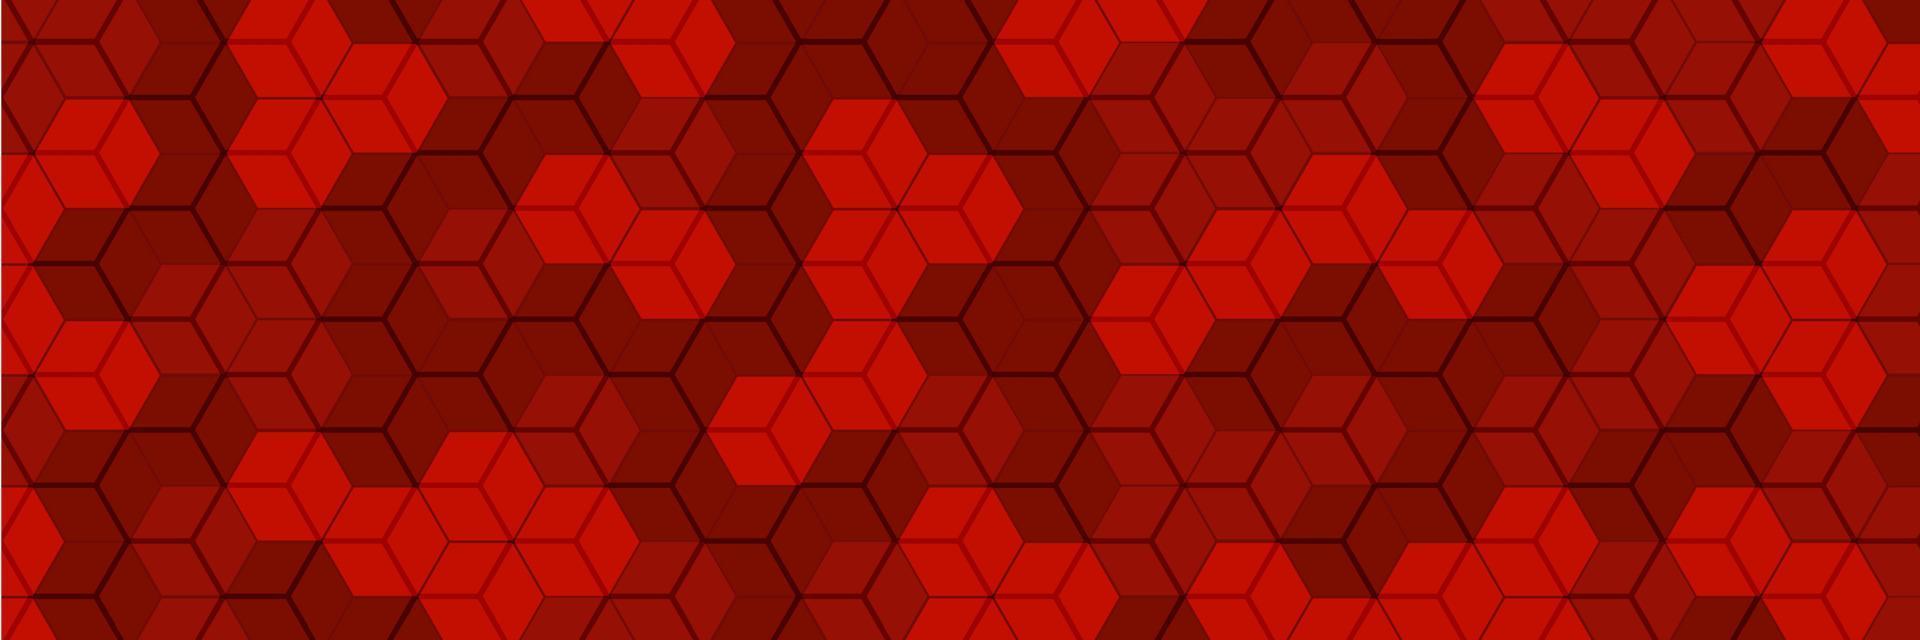 fond rouge hexagones. motif abstrait en nid d'abeille. illustration vectorielle. vecteur